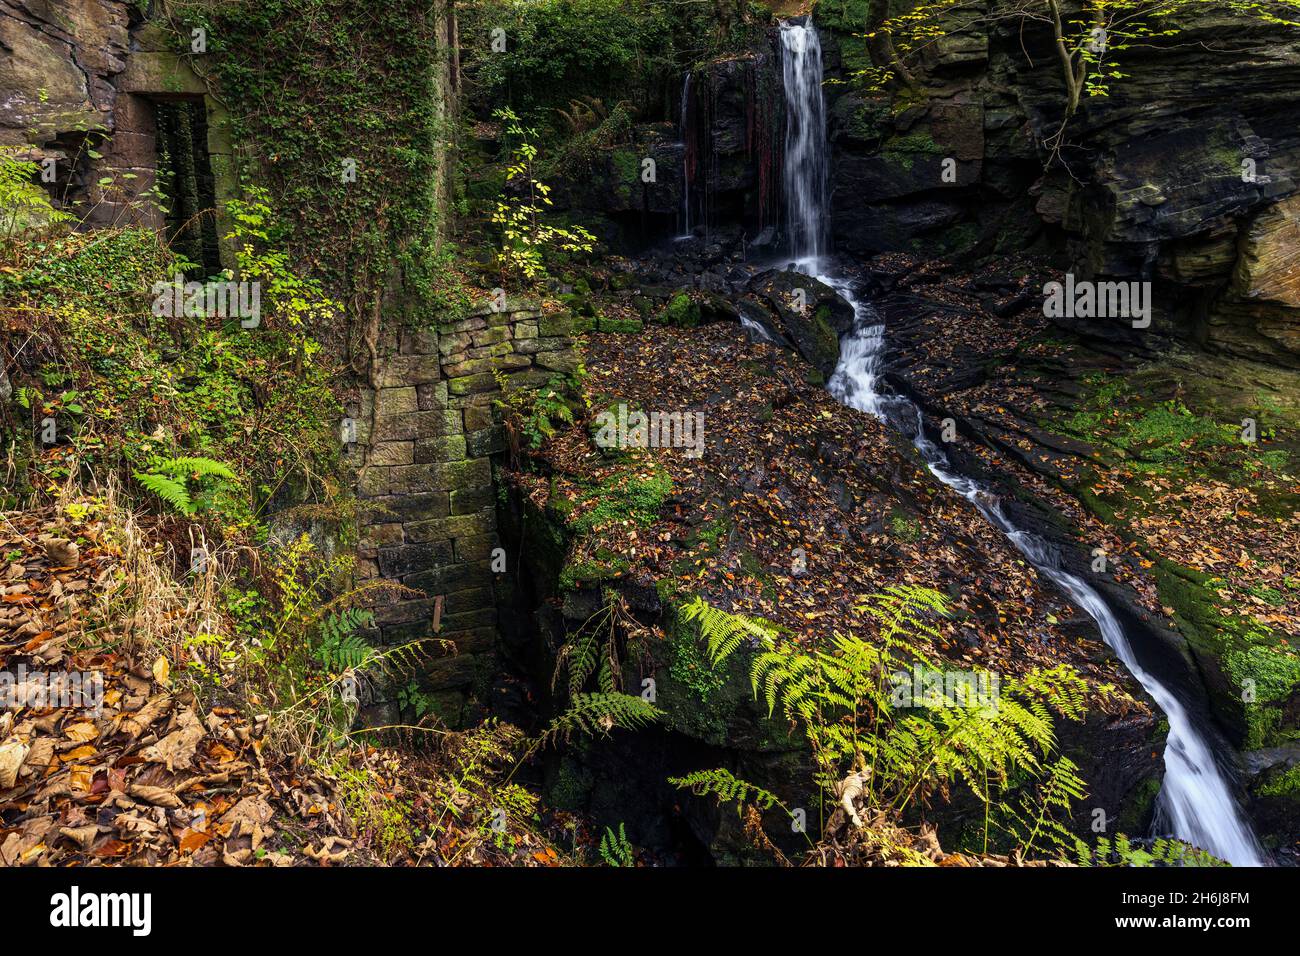 Herbst bei den Lumsdale Falls, gelegen entlang des Lumsdale Valley und nur einen kurzen Spaziergang von Matlock in Derbyshire entfernt, am Rande des Peak District National Park. Stockfoto